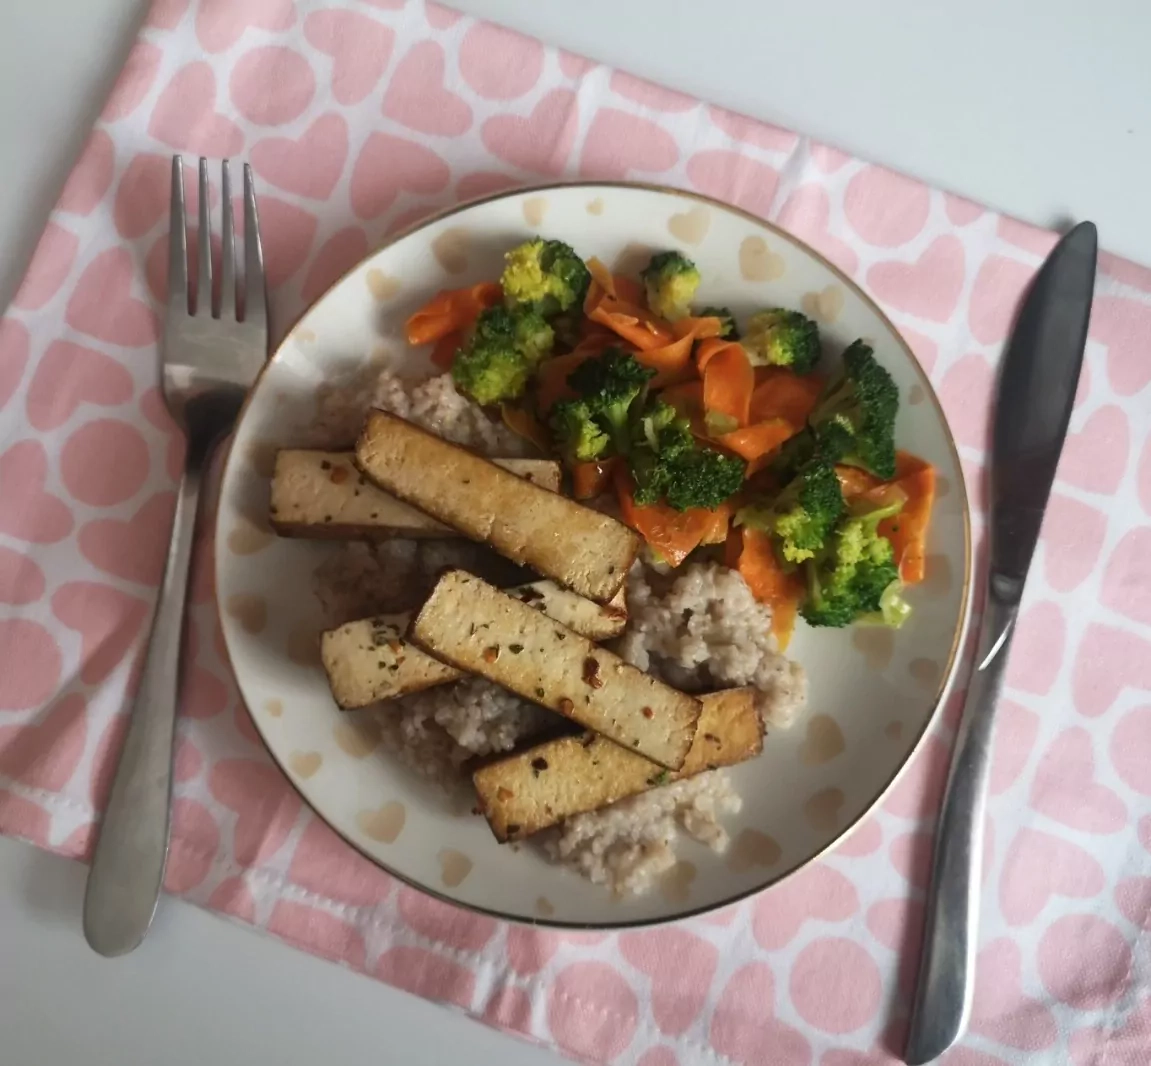 Marinuotas tofu su brokoliais, morkomis, porais ir miežine koše (veganiškas patiekalas)